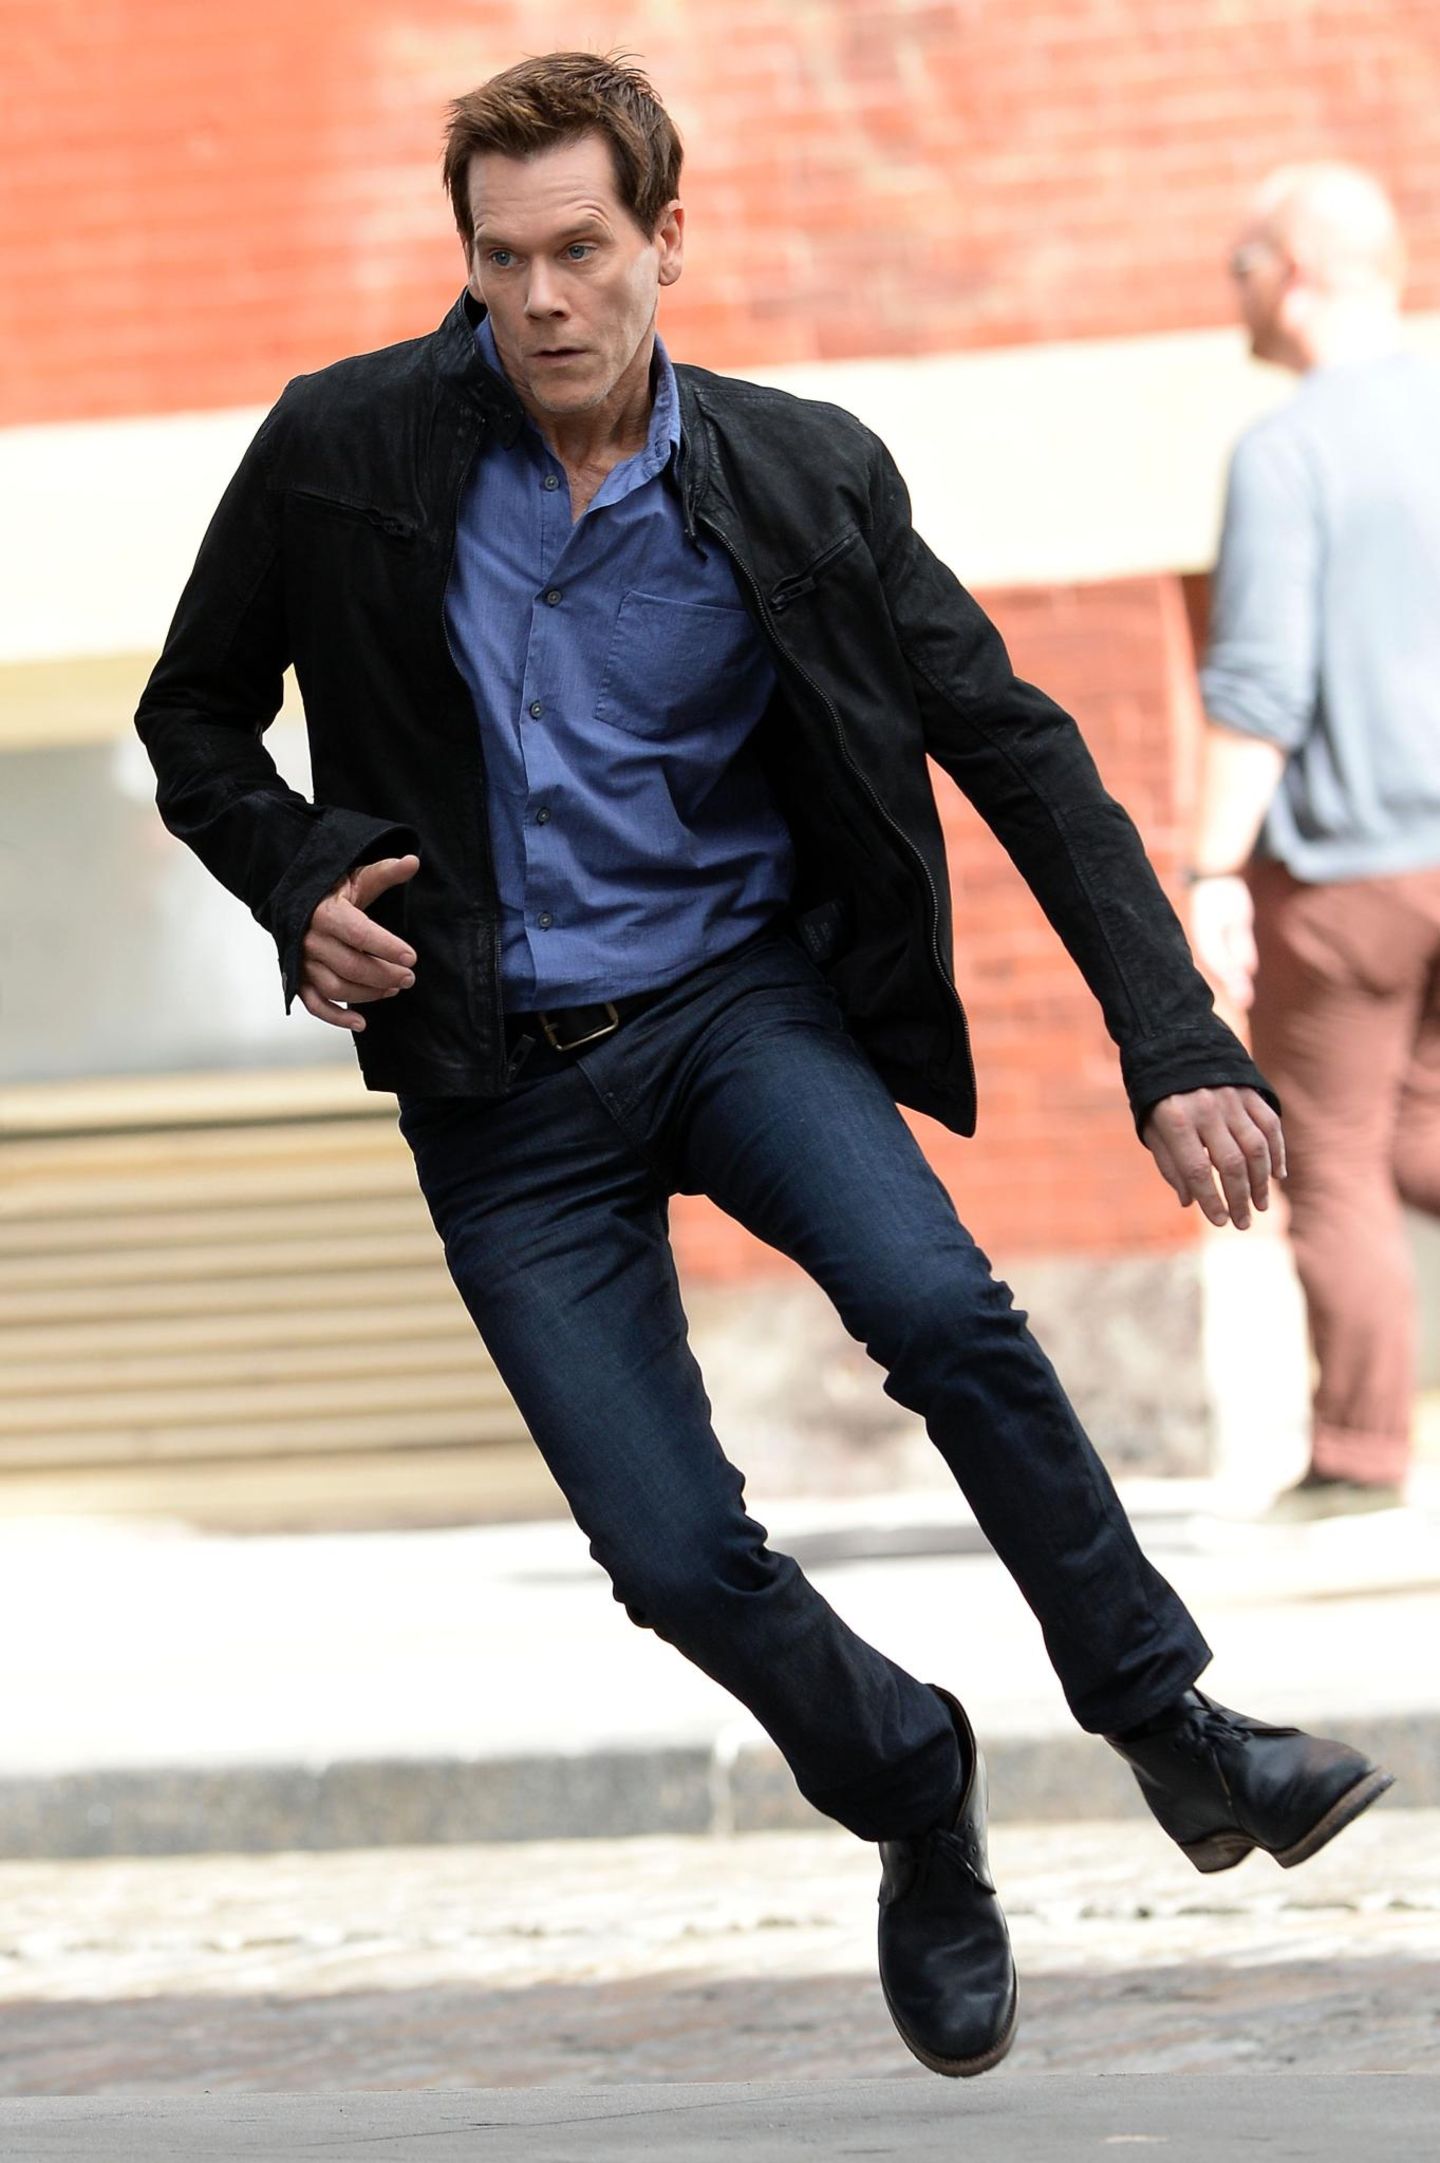 16. September 2013: Für Kevin Bacon geht es am Set von "The Following" in Manhattan rasant zu.